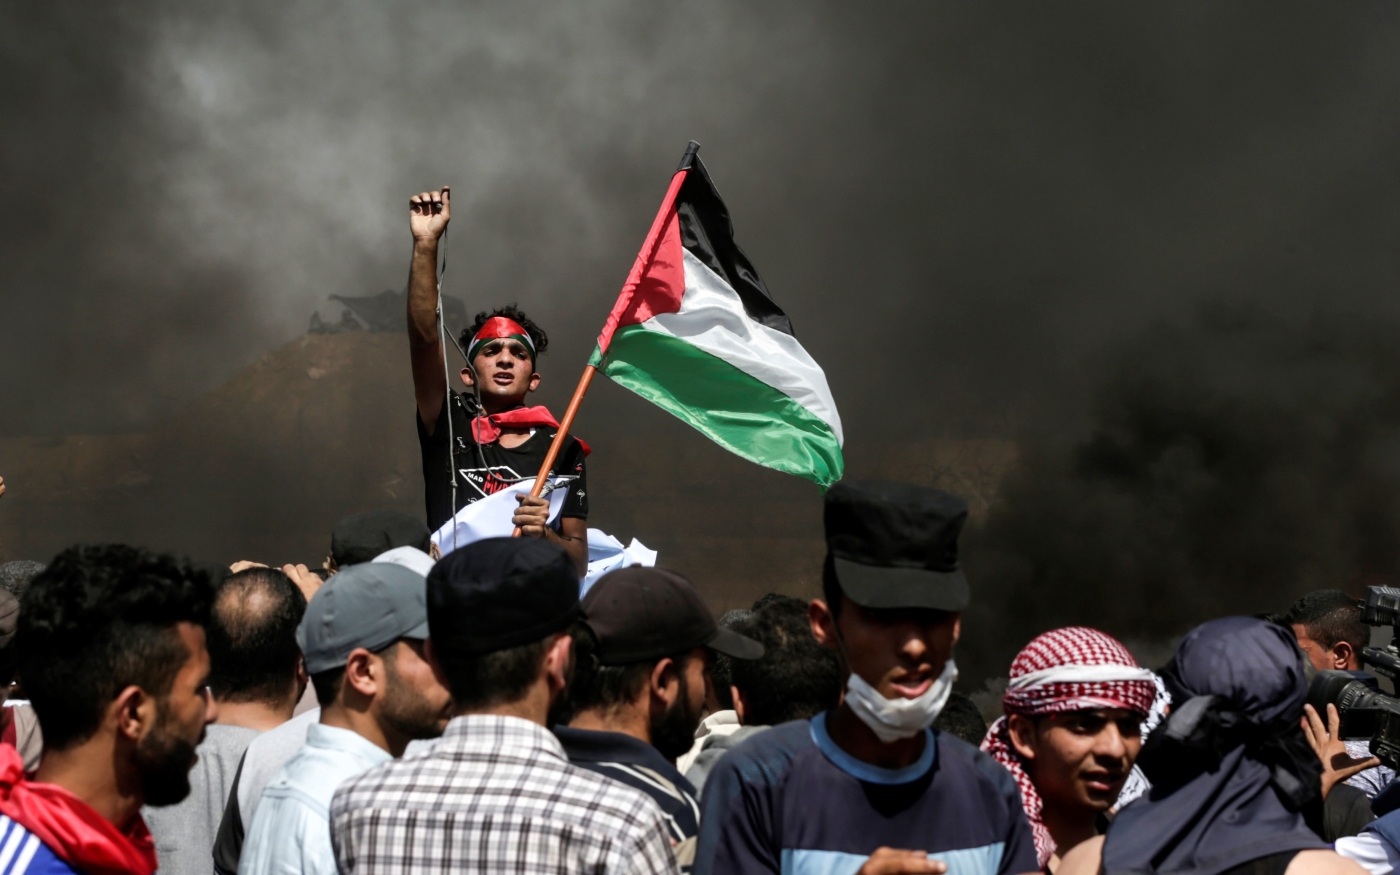 Un manifestant palestinien agite son drapeau national alors que la fumée s’élève de pneus en feu lors d’une manifestation le long de la frontière entre la bande de Gaza et Israël, le 8 juin 2018 (AFP)